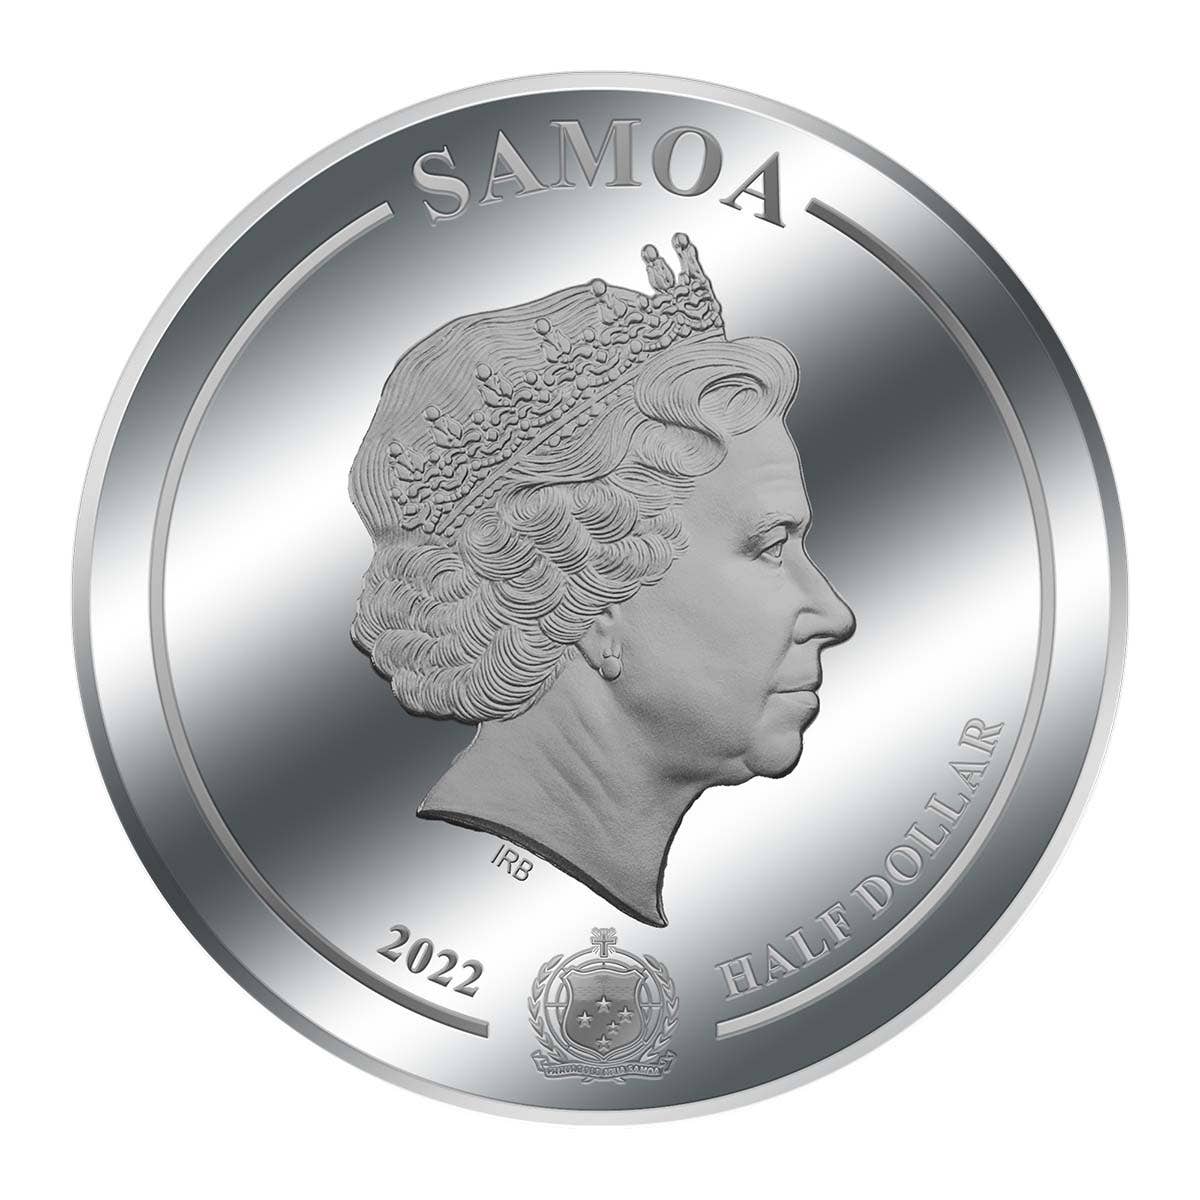 2022 Queen Elizabeth II Platinum Jubilee Coin in Card